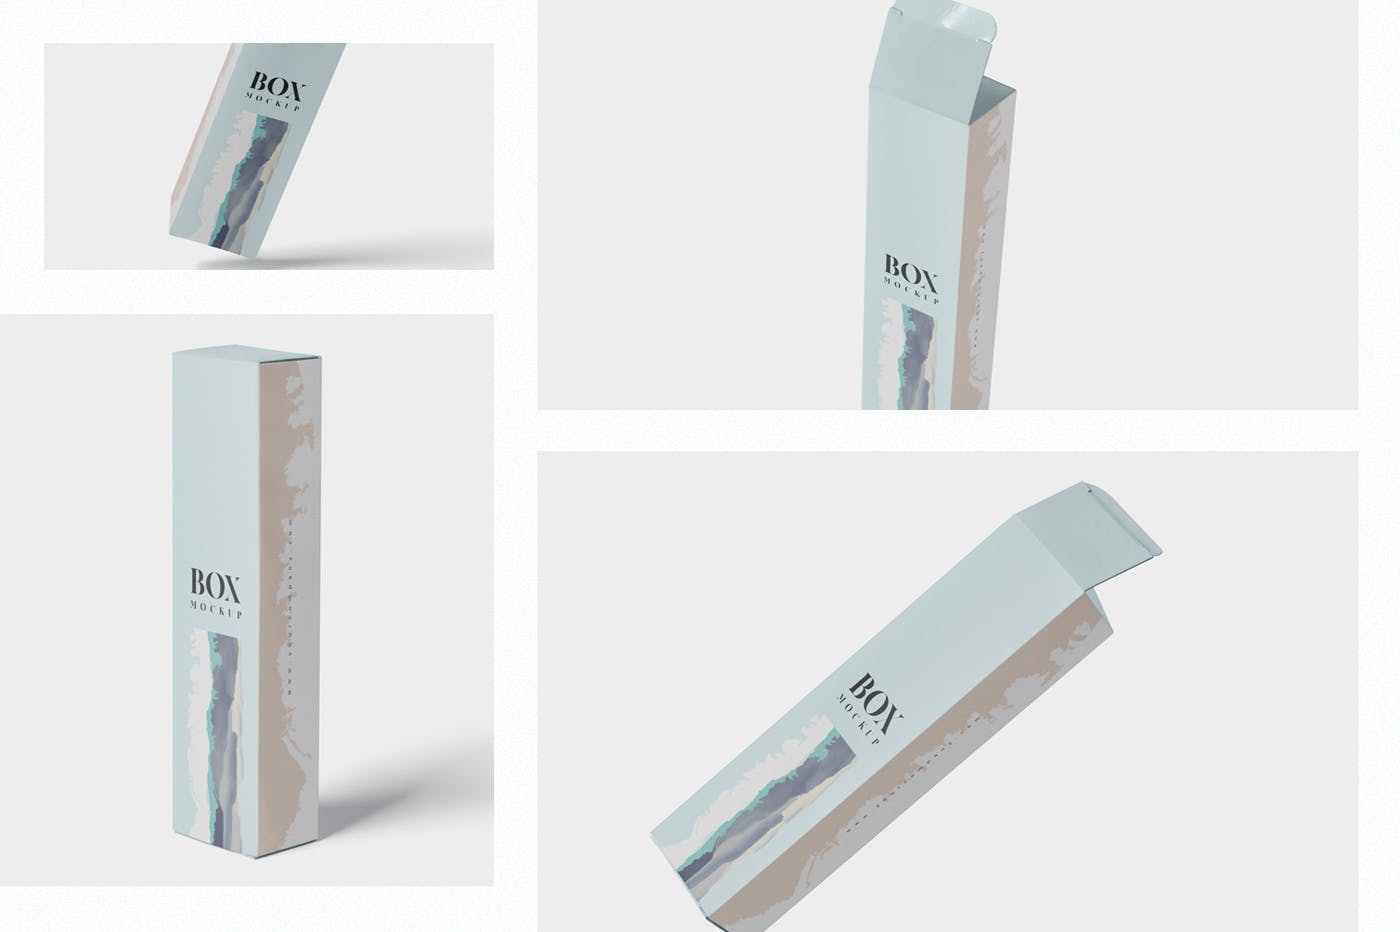 长条形化妆品/护肤品包装纸盒设计图样机 Box Mockup – Slim High Rectangle Shape插图(1)